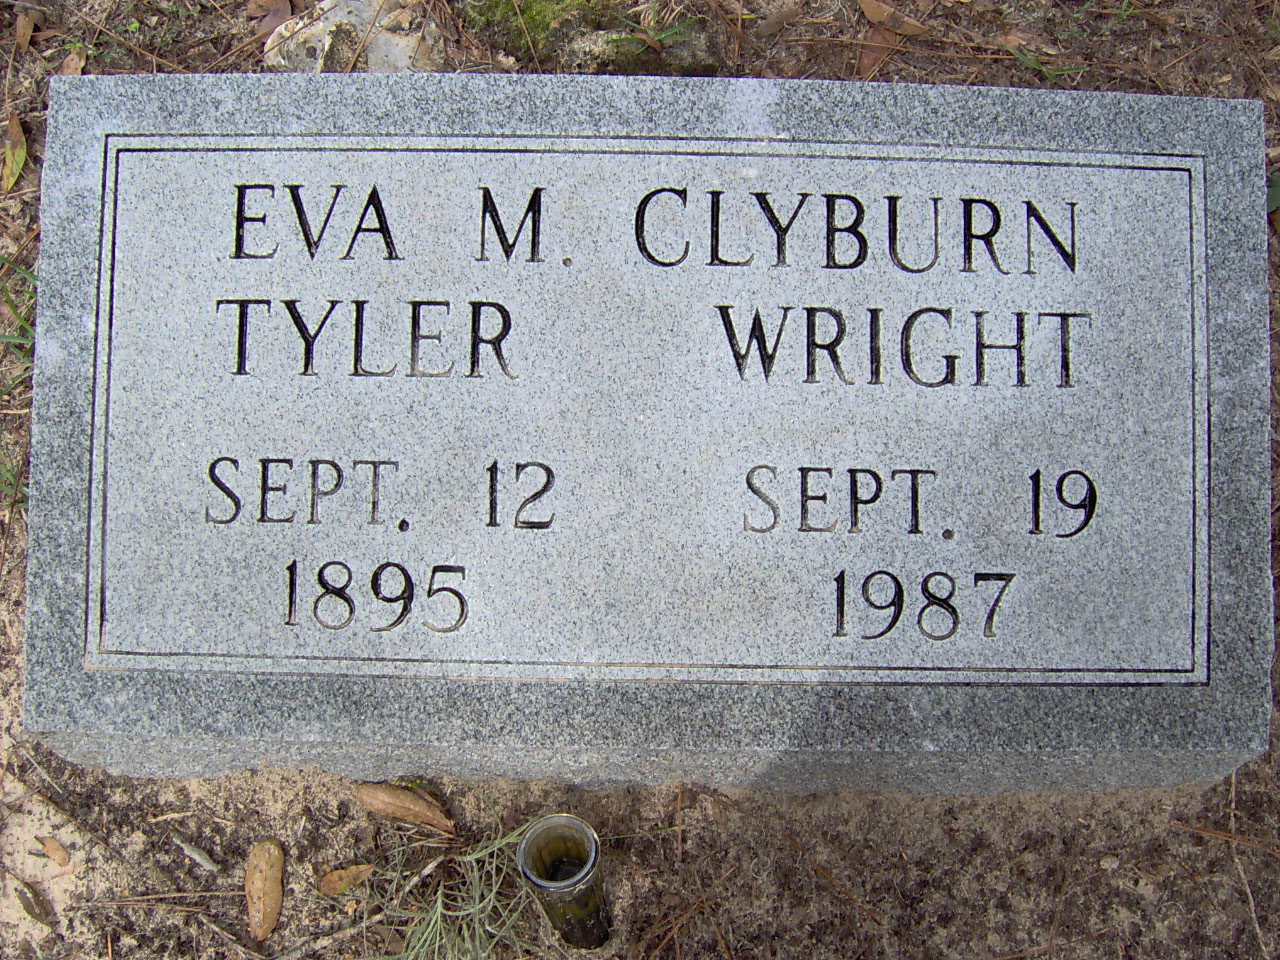 Headstone for Wright, Eva M Clyburn Tyler